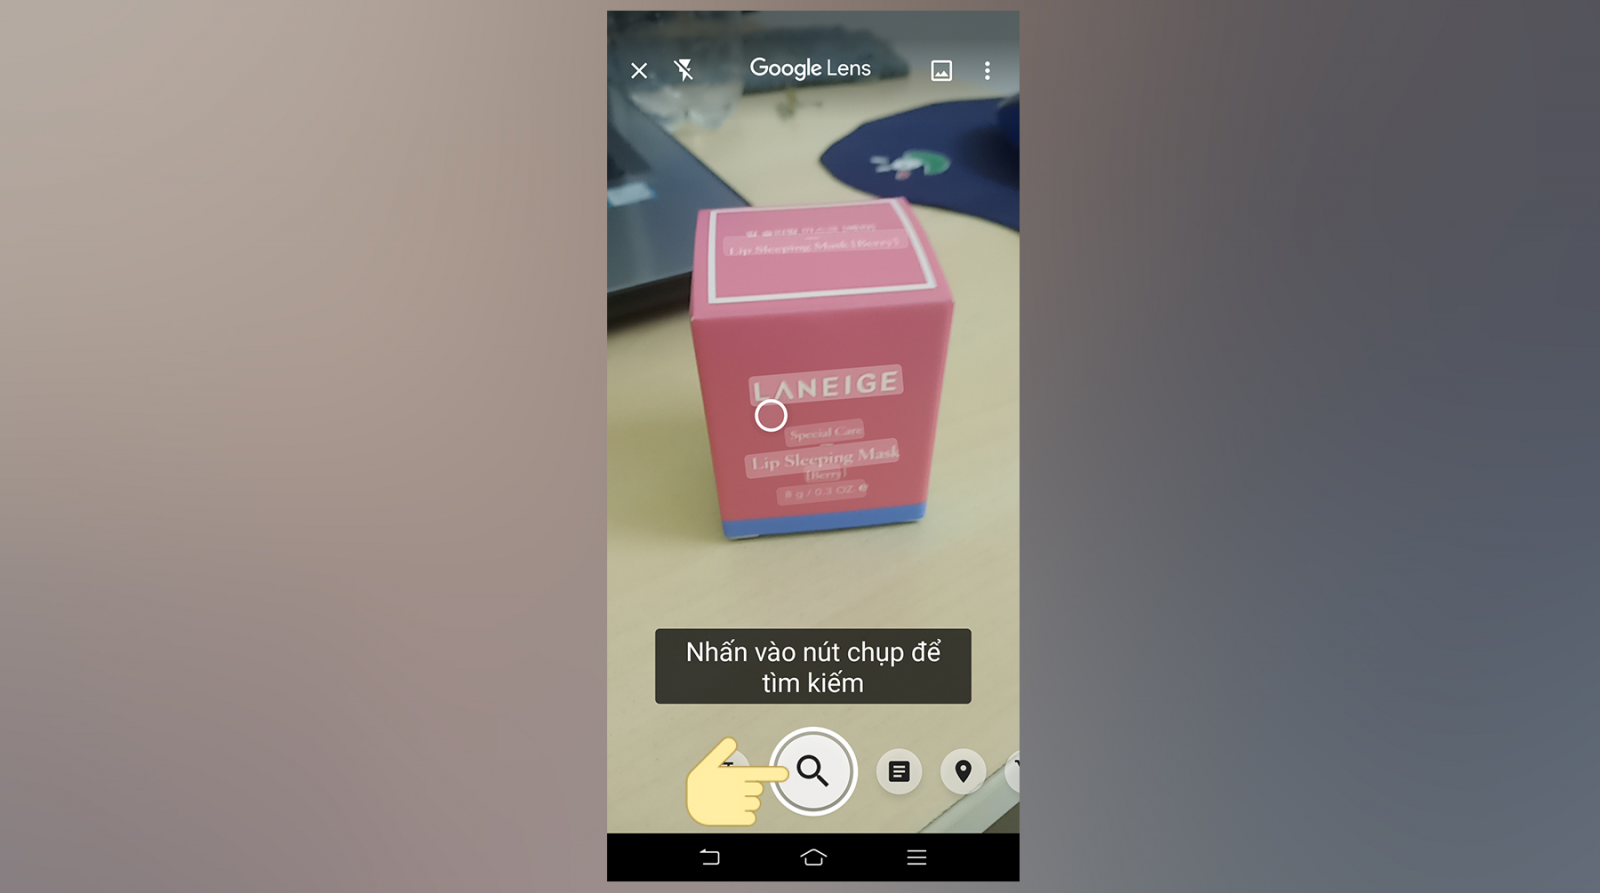 Google Ống Kính là 1 trong những dụng cụ giúp đỡ bạn mò mẫm tìm kiếm vấn đề hình hình họa nhanh gọn bên trên Smartphone Android